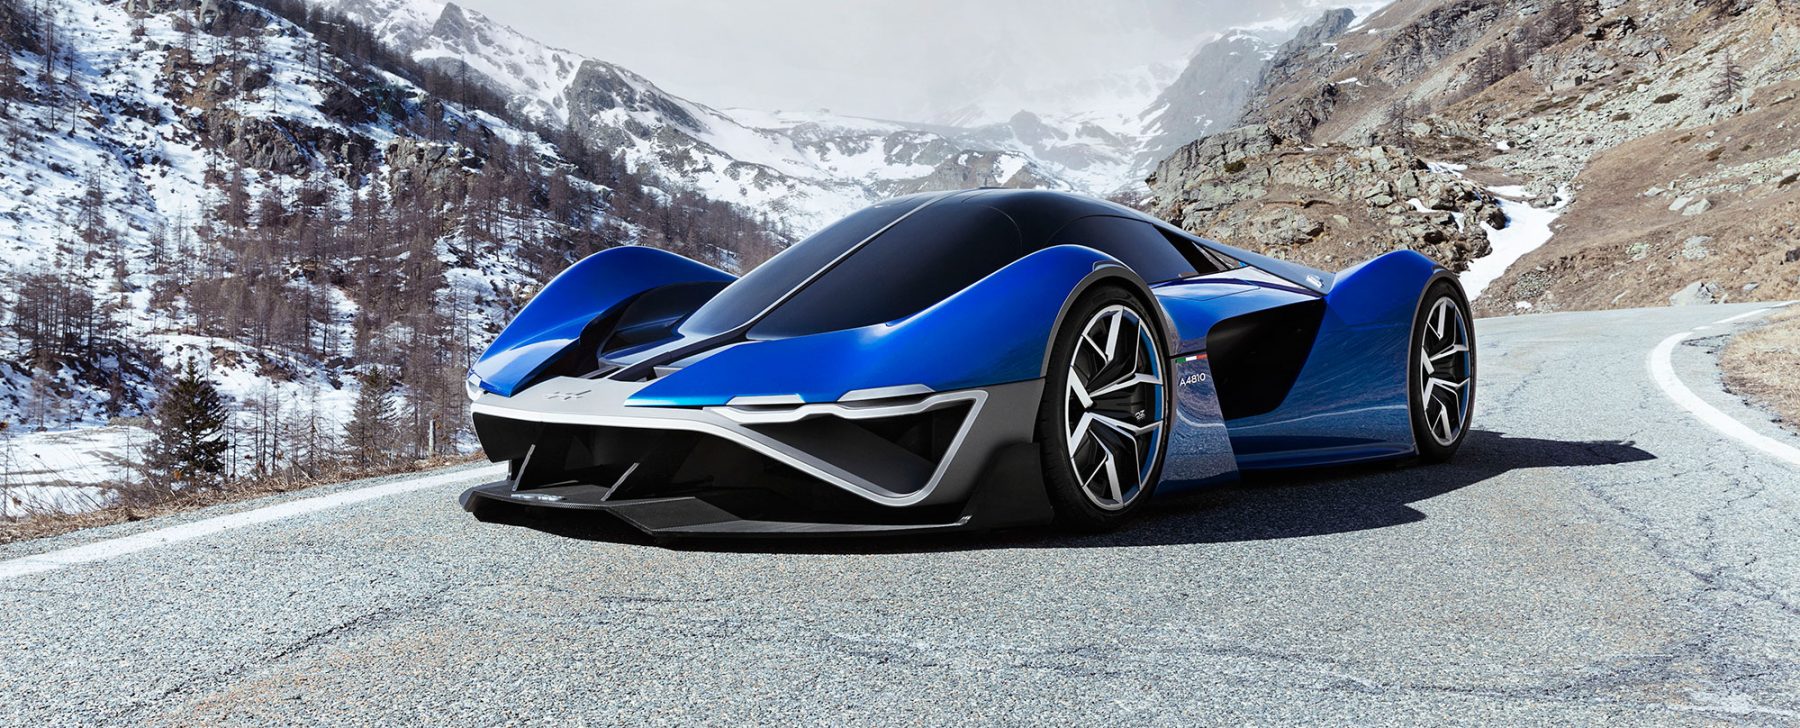 Alpine diseña un deportivo de hidrógeno inspirado en la Fórmula 1